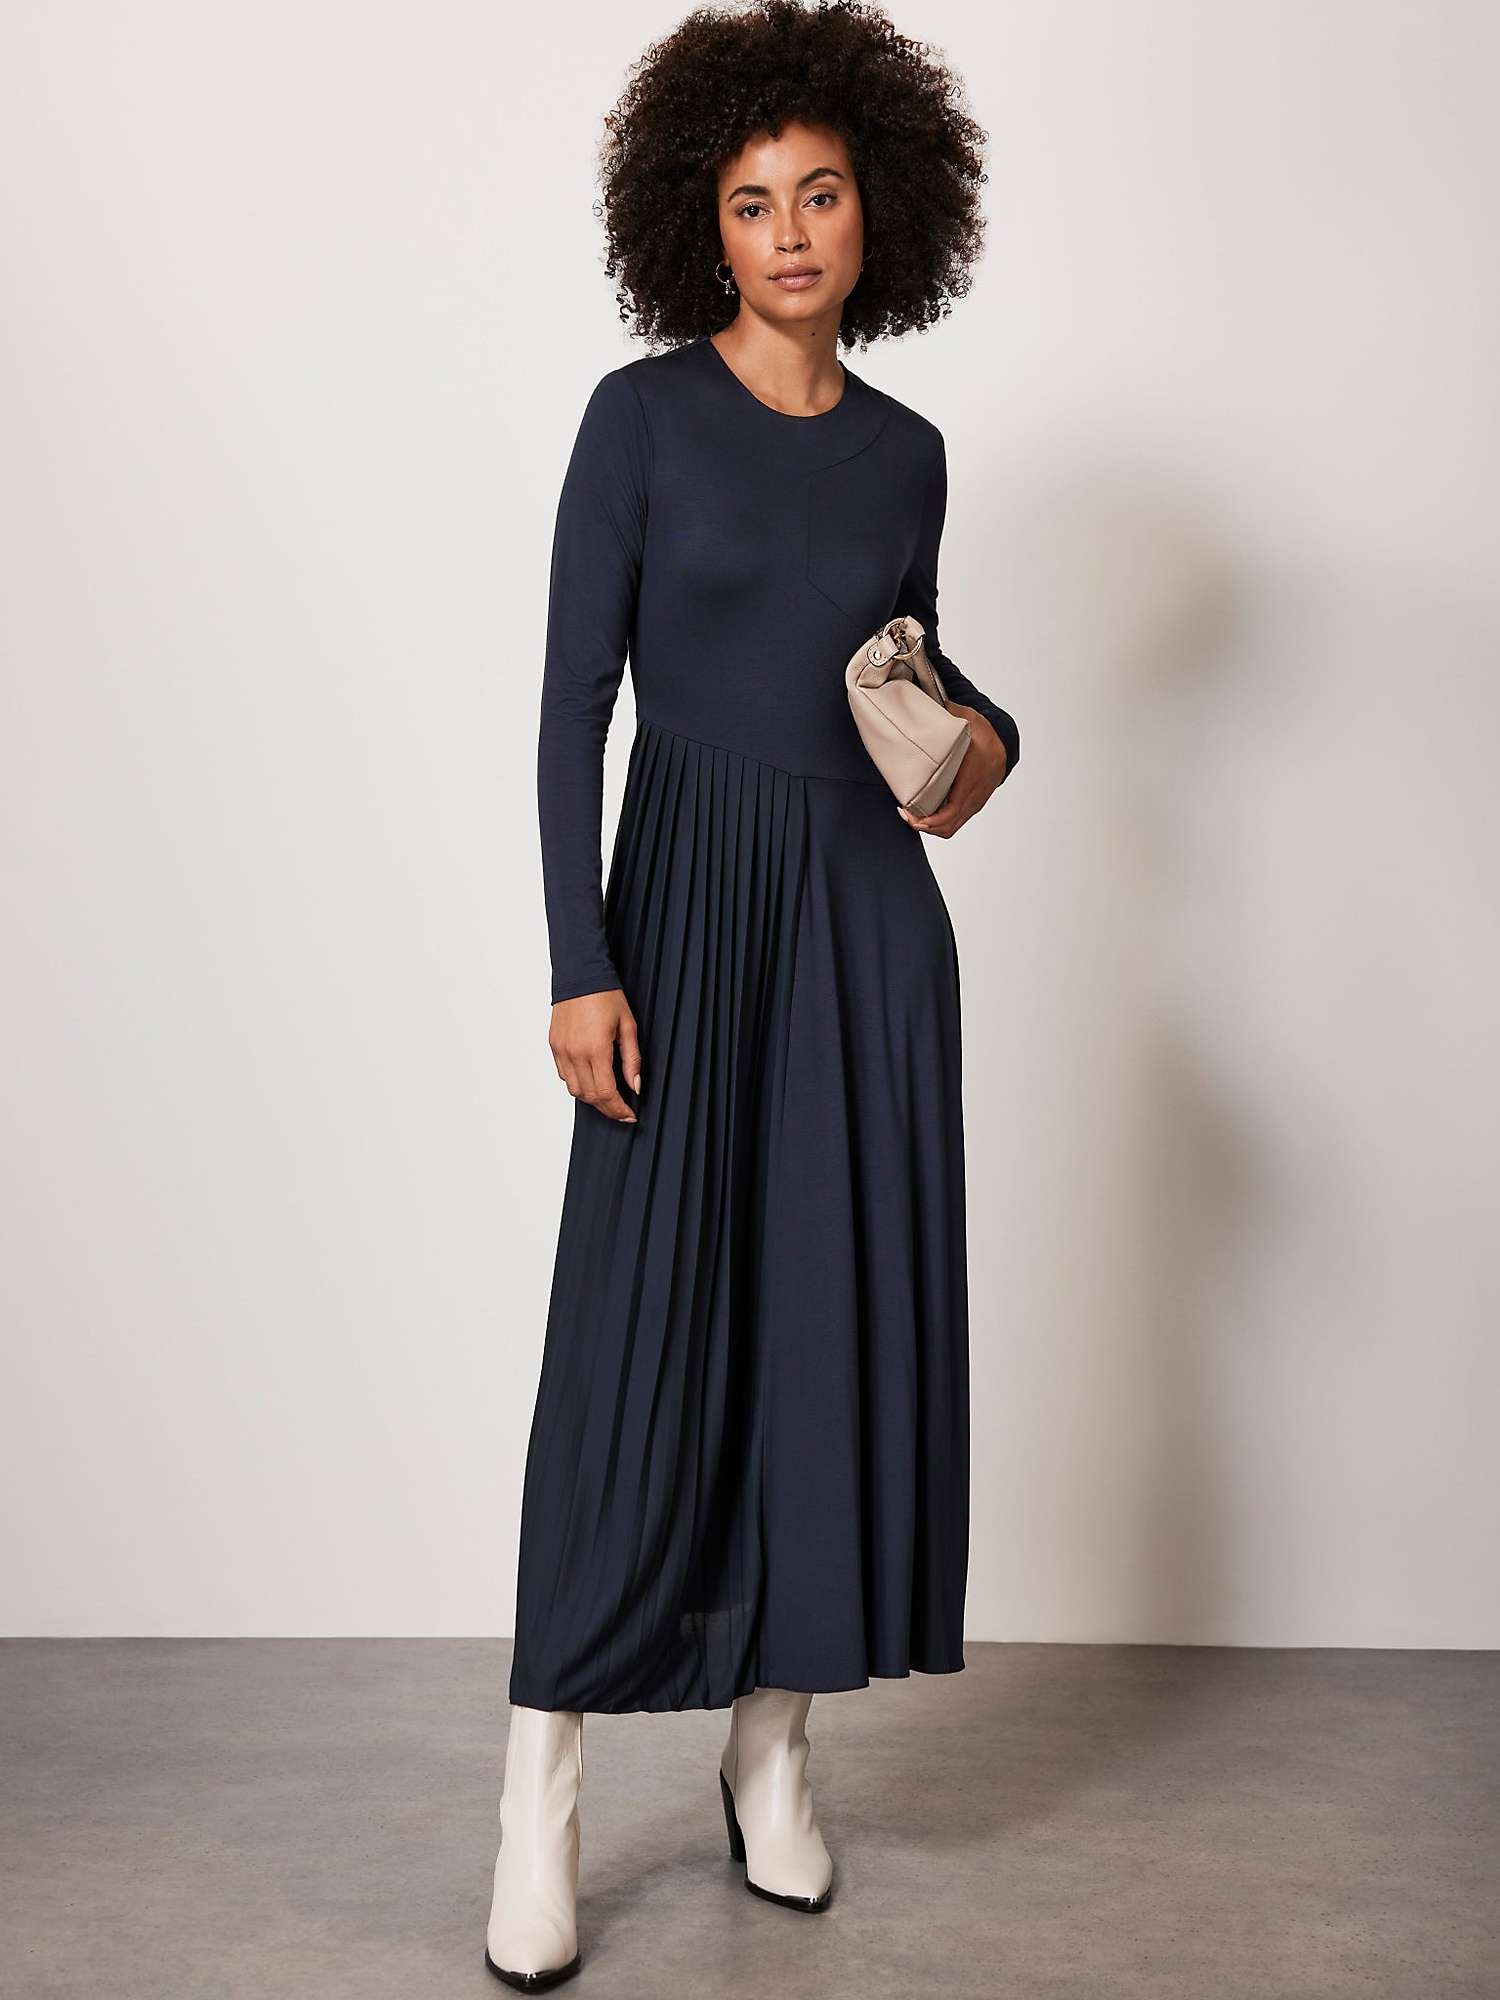 Buy Mint Velvet Jersey Midi Dress, Dark Blue Online at johnlewis.com